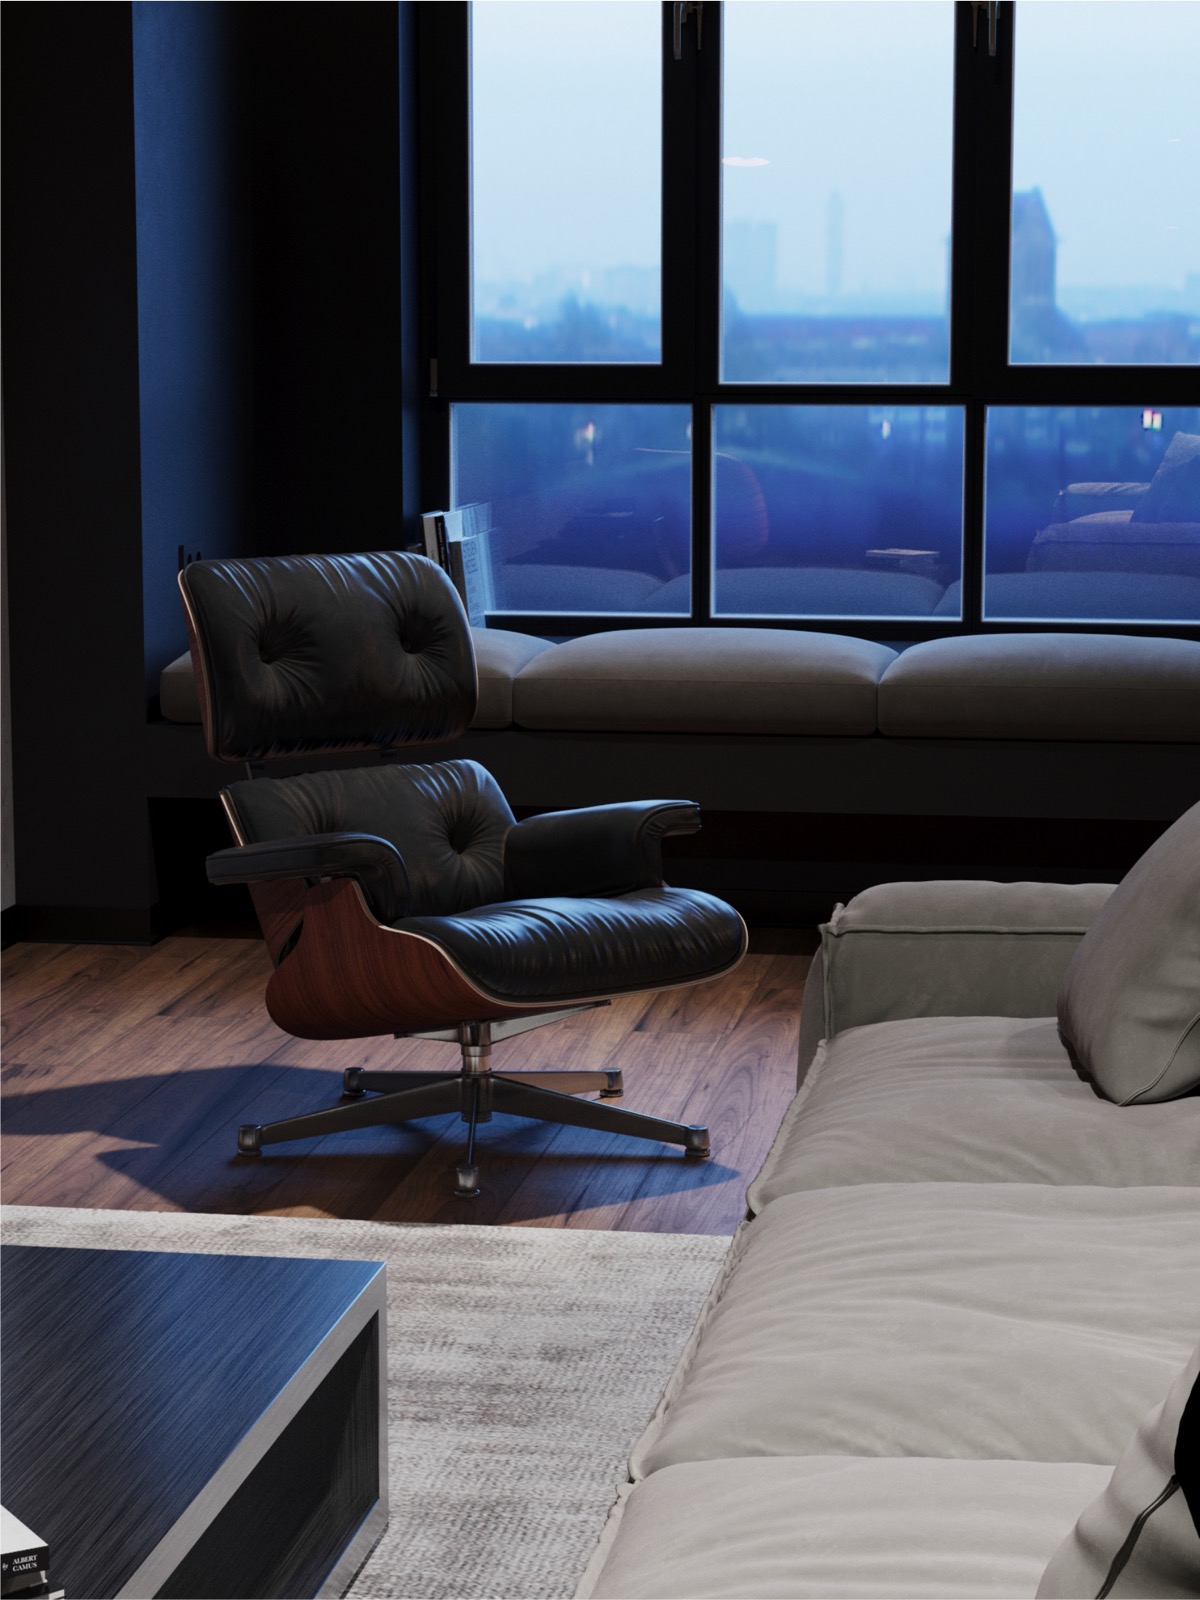 Eames-lounge-chair-600x800.jpg